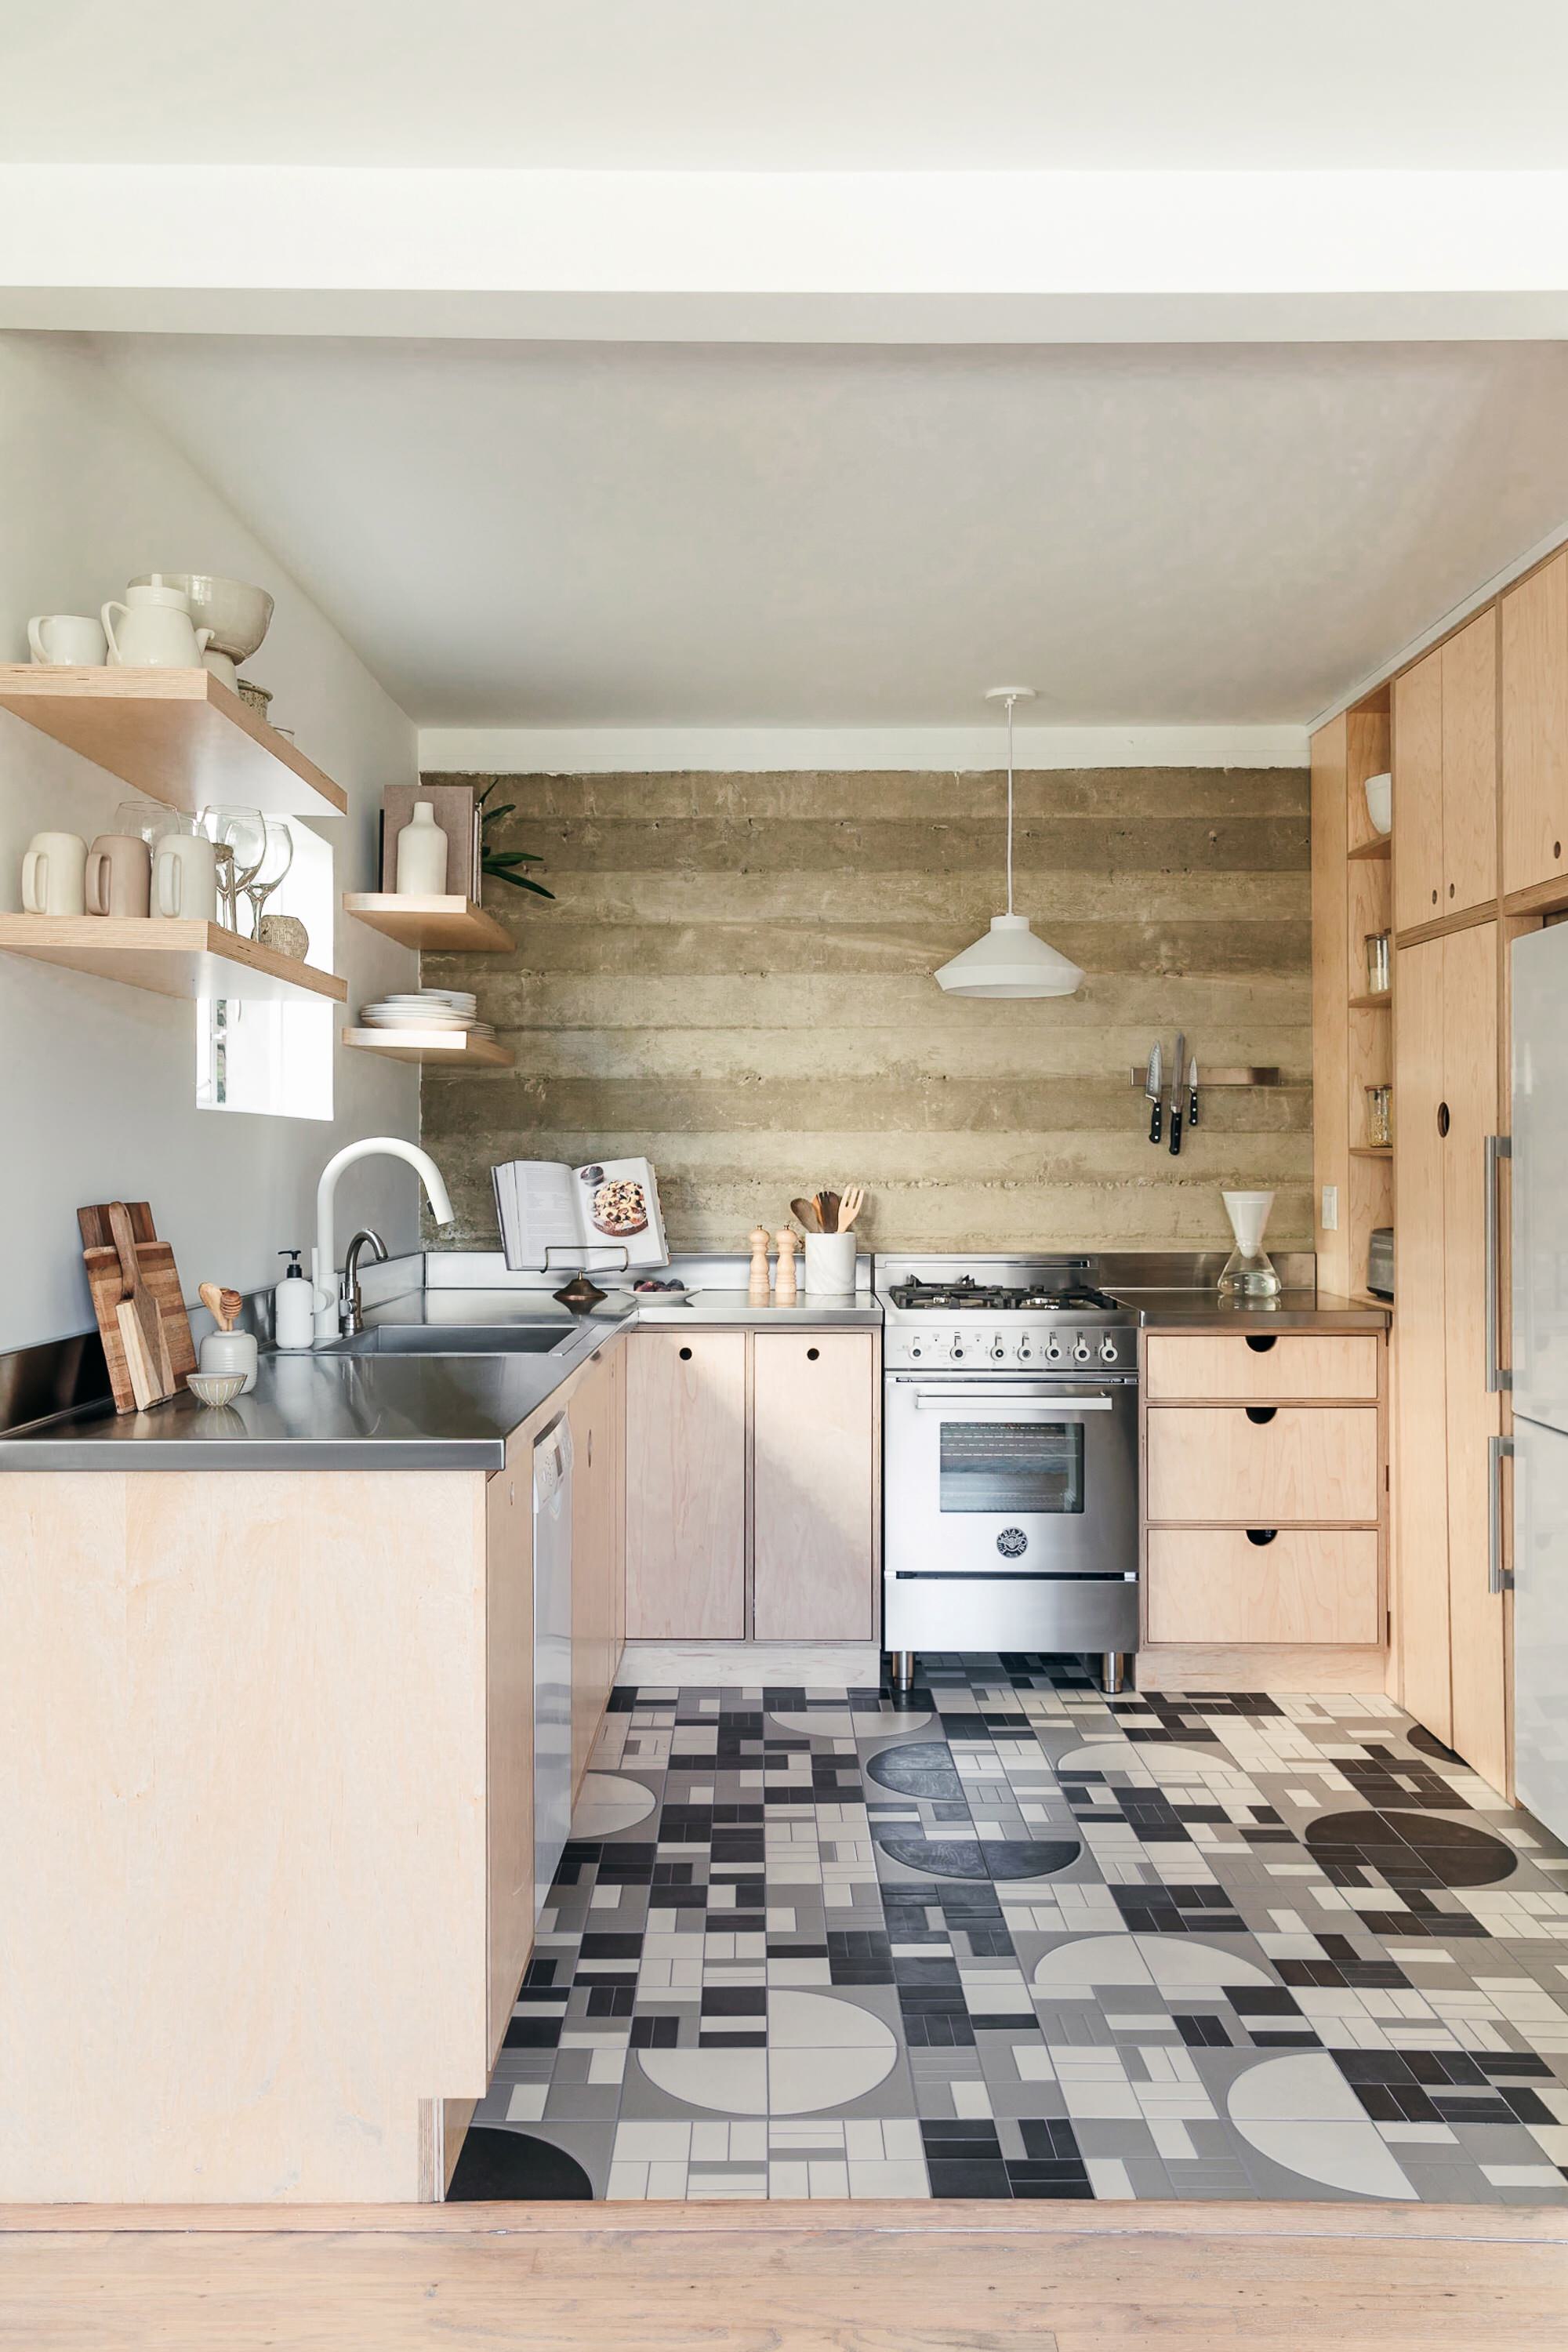 White Tile Floor Kitchen Ideas, Ceramic Tile Designs For Kitchen Floors